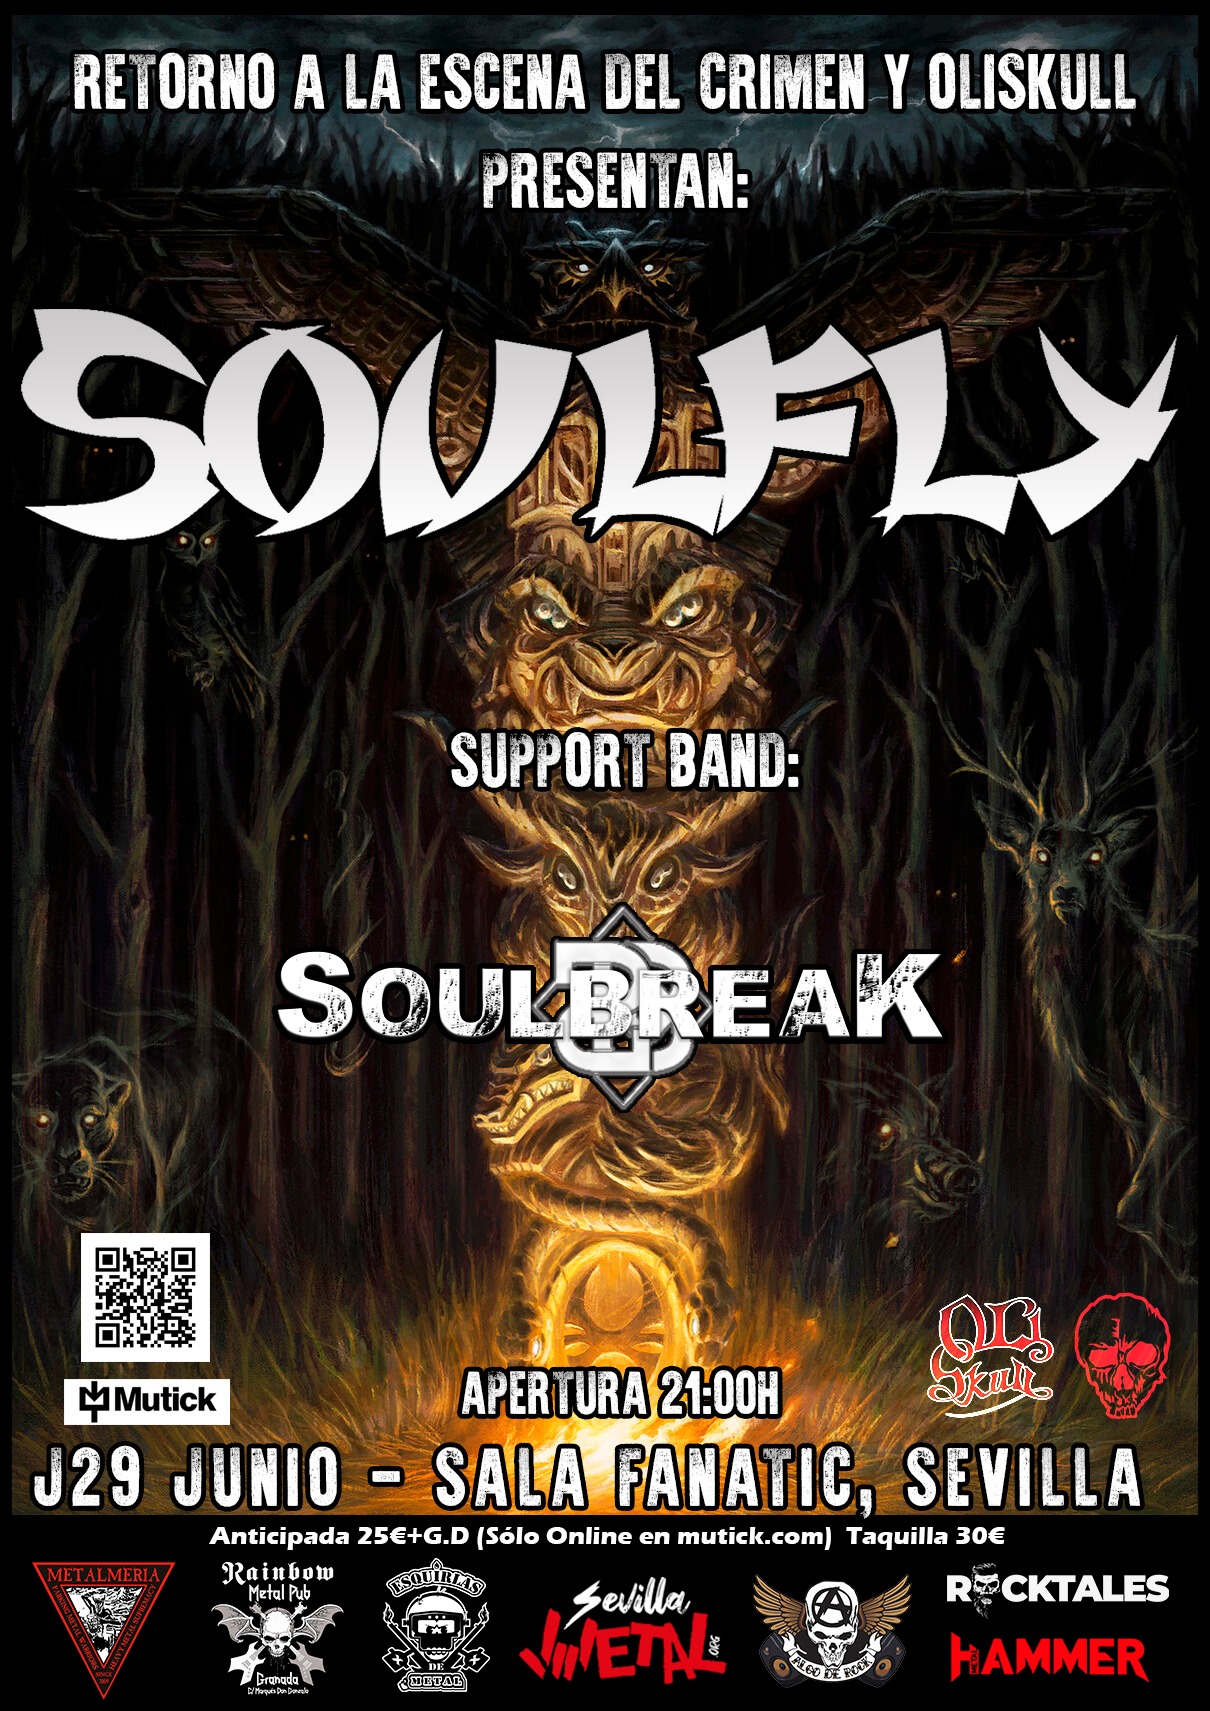 Soulfly + Soulbreak el 29 de junio en Sevilla